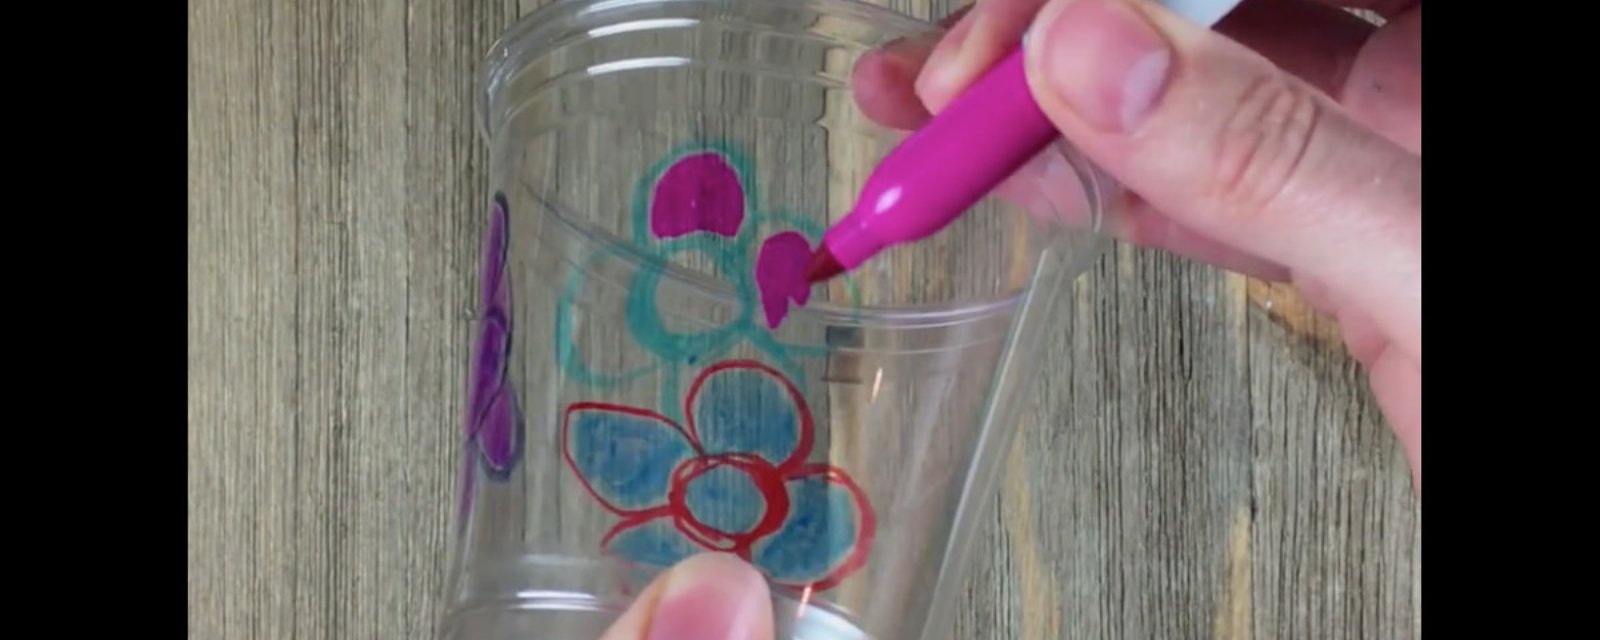 Elle dessine sur des verres avec des marqueurs: quand elle les fait fondre, le résultat est adorable!